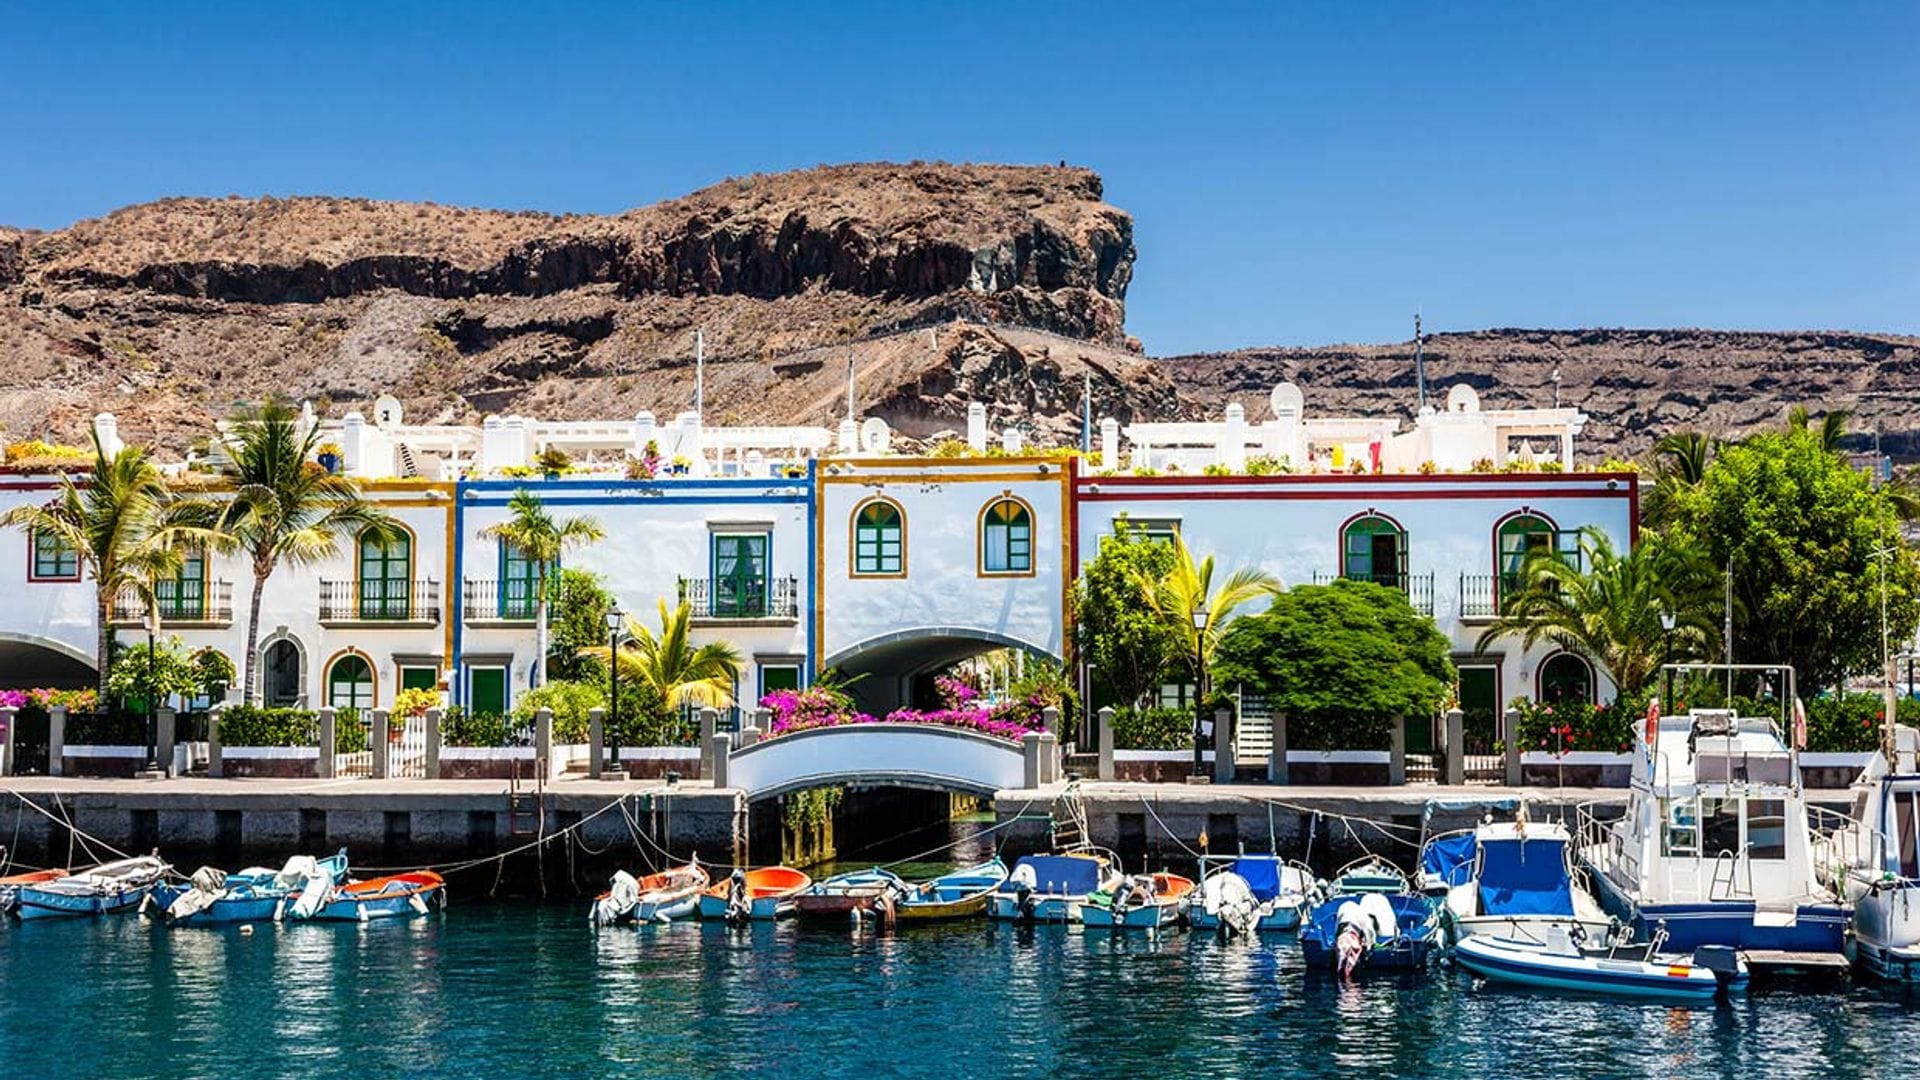 Mogán, el pueblo de Gran Canaria que es una pequeña Venecia